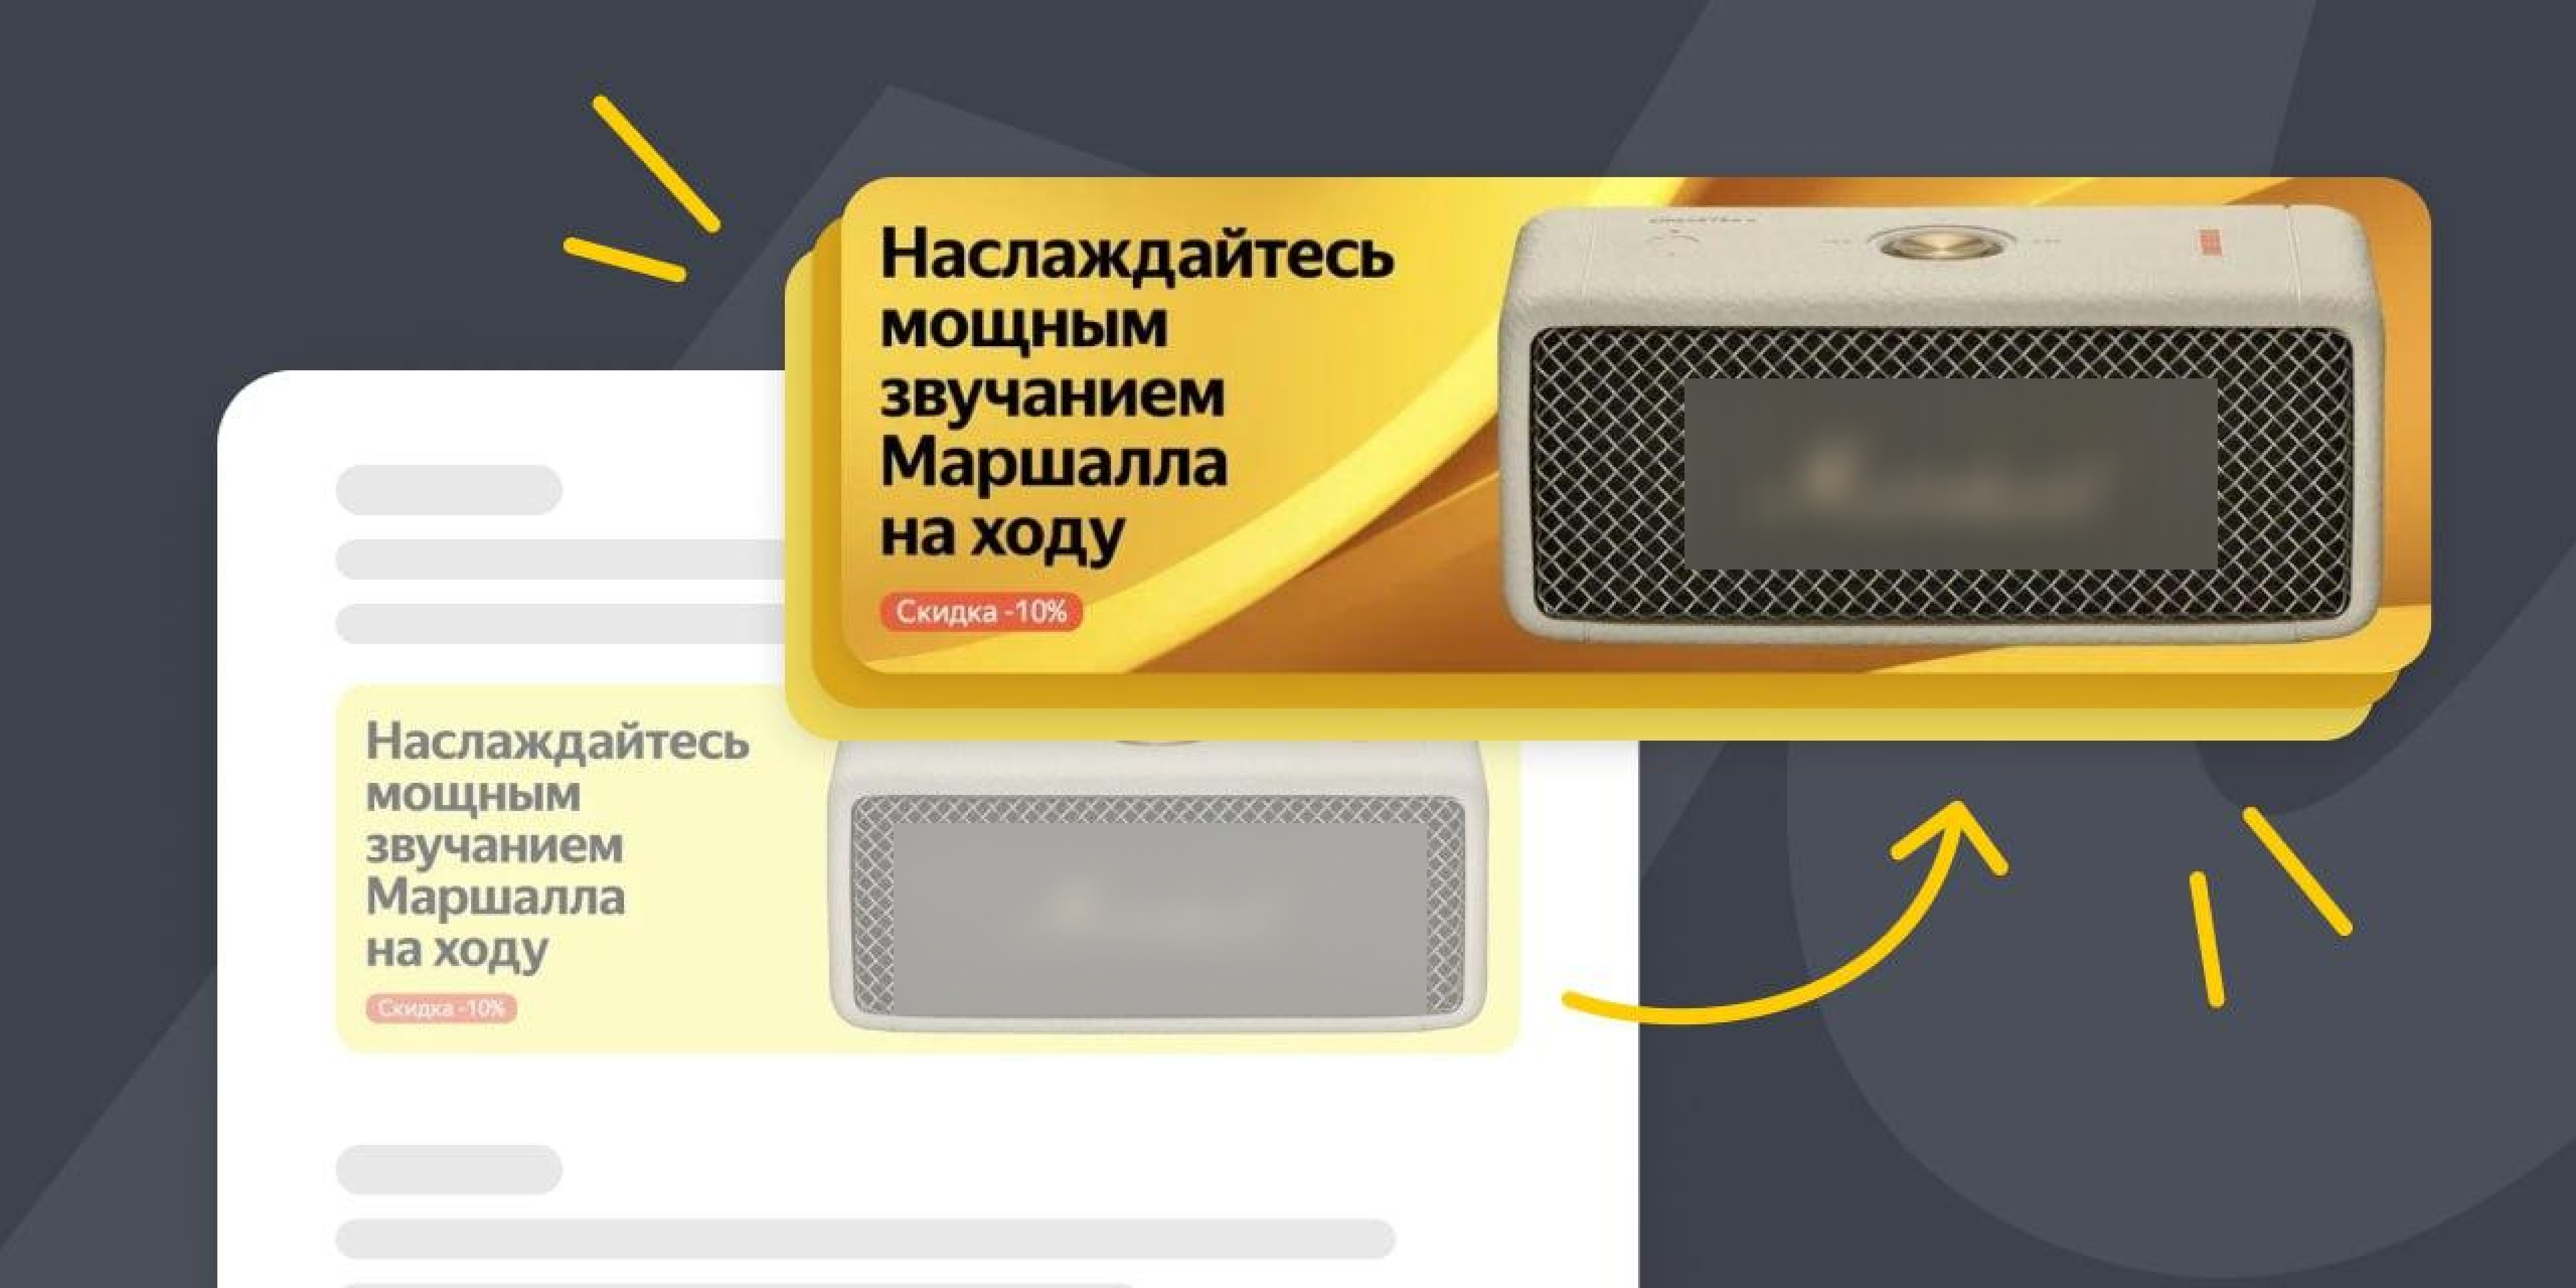 Создание фонов для баннеров на Маркете с помощью YandexGPT